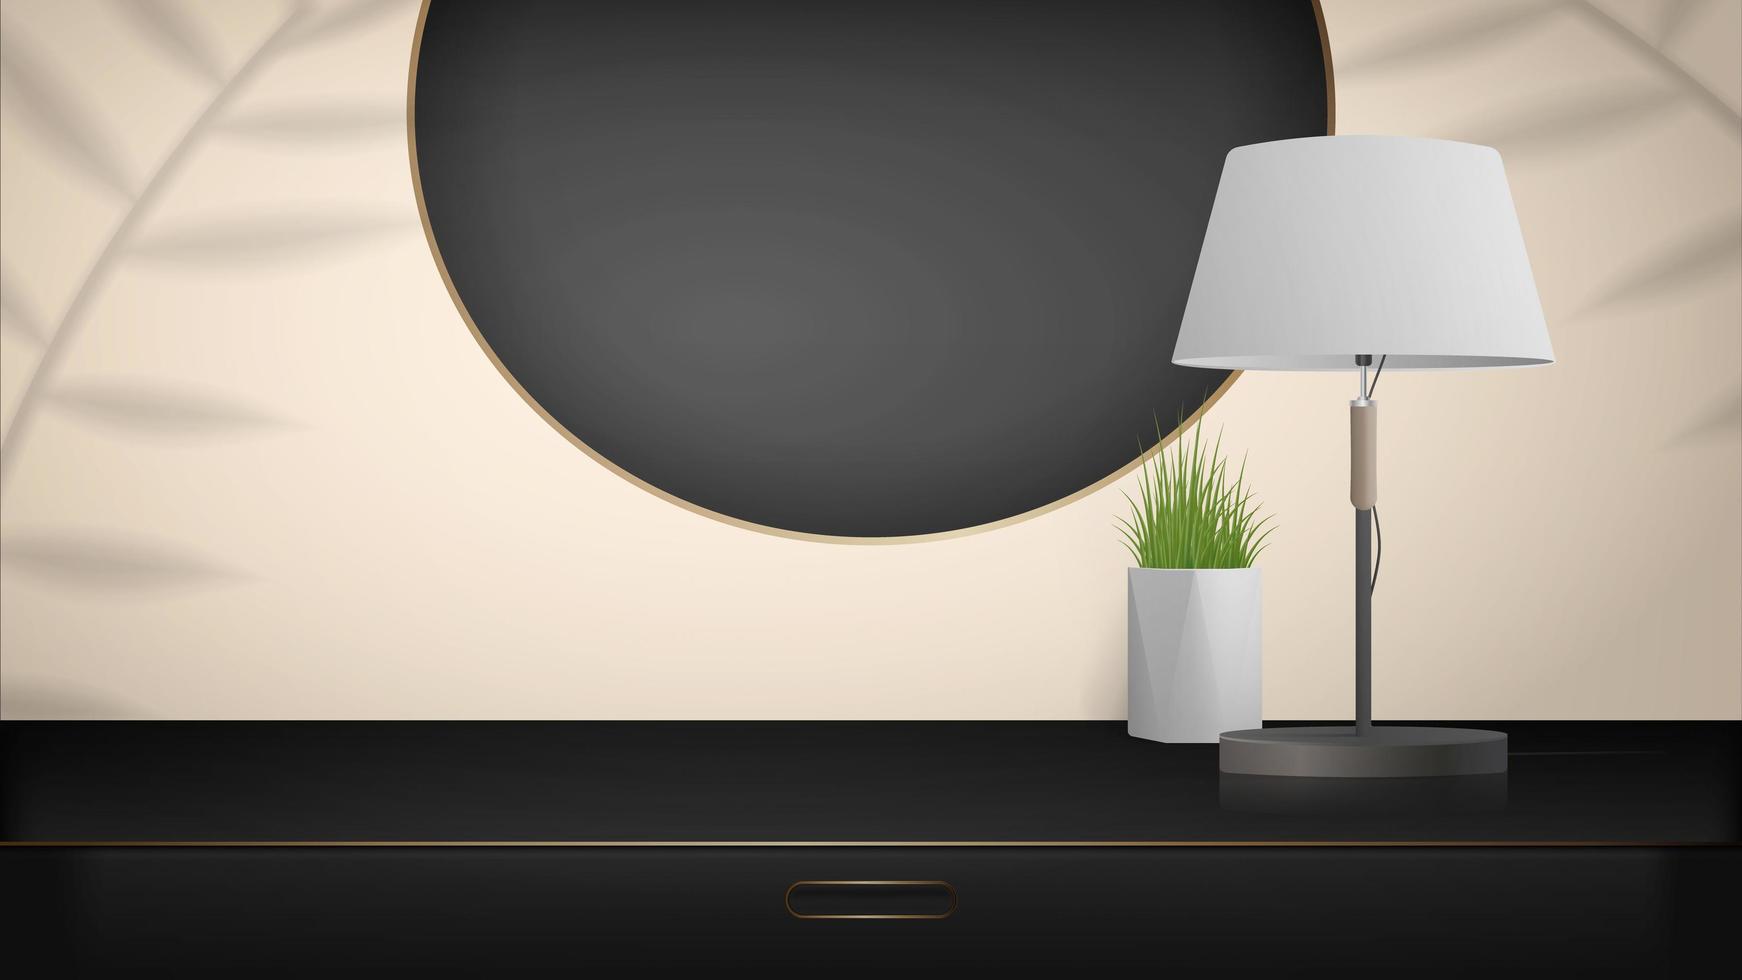 scène minimale pour la présentation du produit. armoire noire avec des accents dorés, une lampe de table et une plante d'intérieur. maquette pour mettre en valeur un produit cosmétique, un podium, un socle ou une plate-forme. vecteur